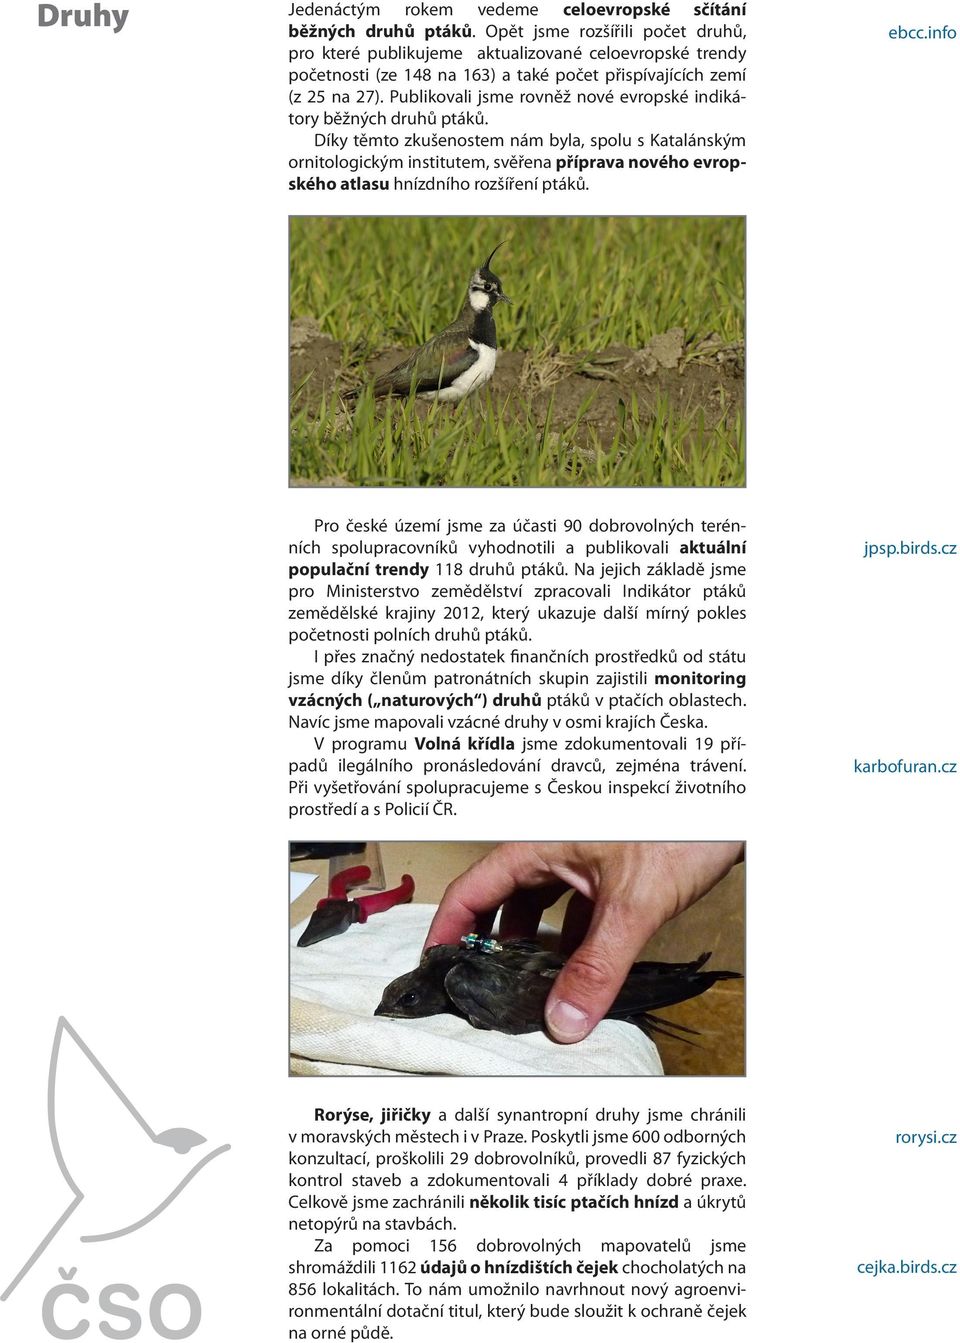 Publikovali jsme rovněž nové evropské indikátory běžných druhů ptáků.